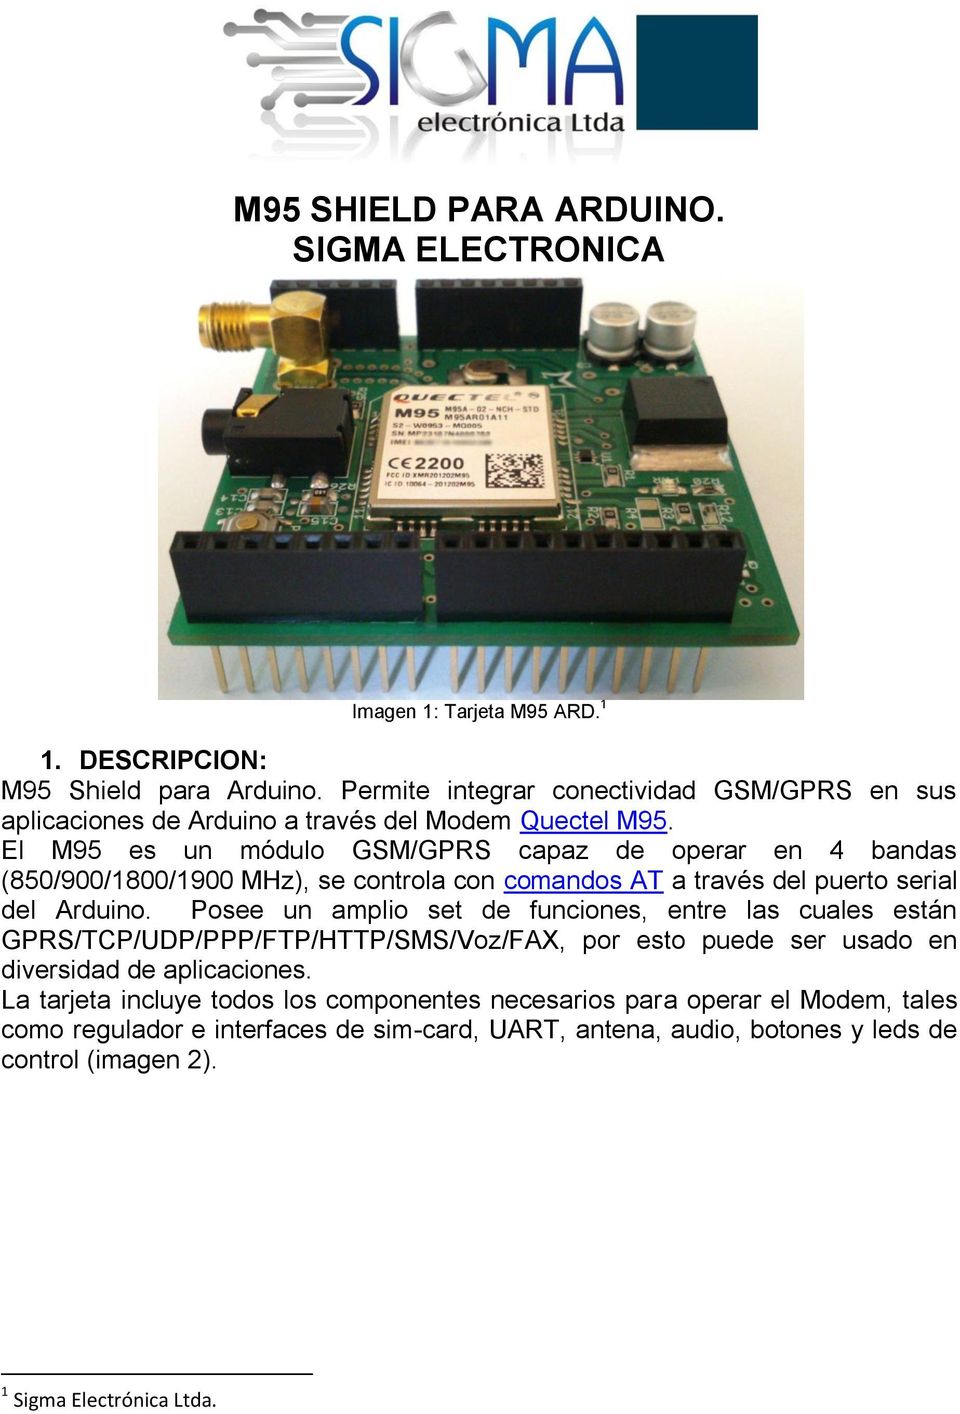 El M95 es un módulo GSM/GPRS capaz de operar en 4 bandas (850/900/1800/1900 MHz), se controla con comandos AT a través del puerto serial del Arduino.